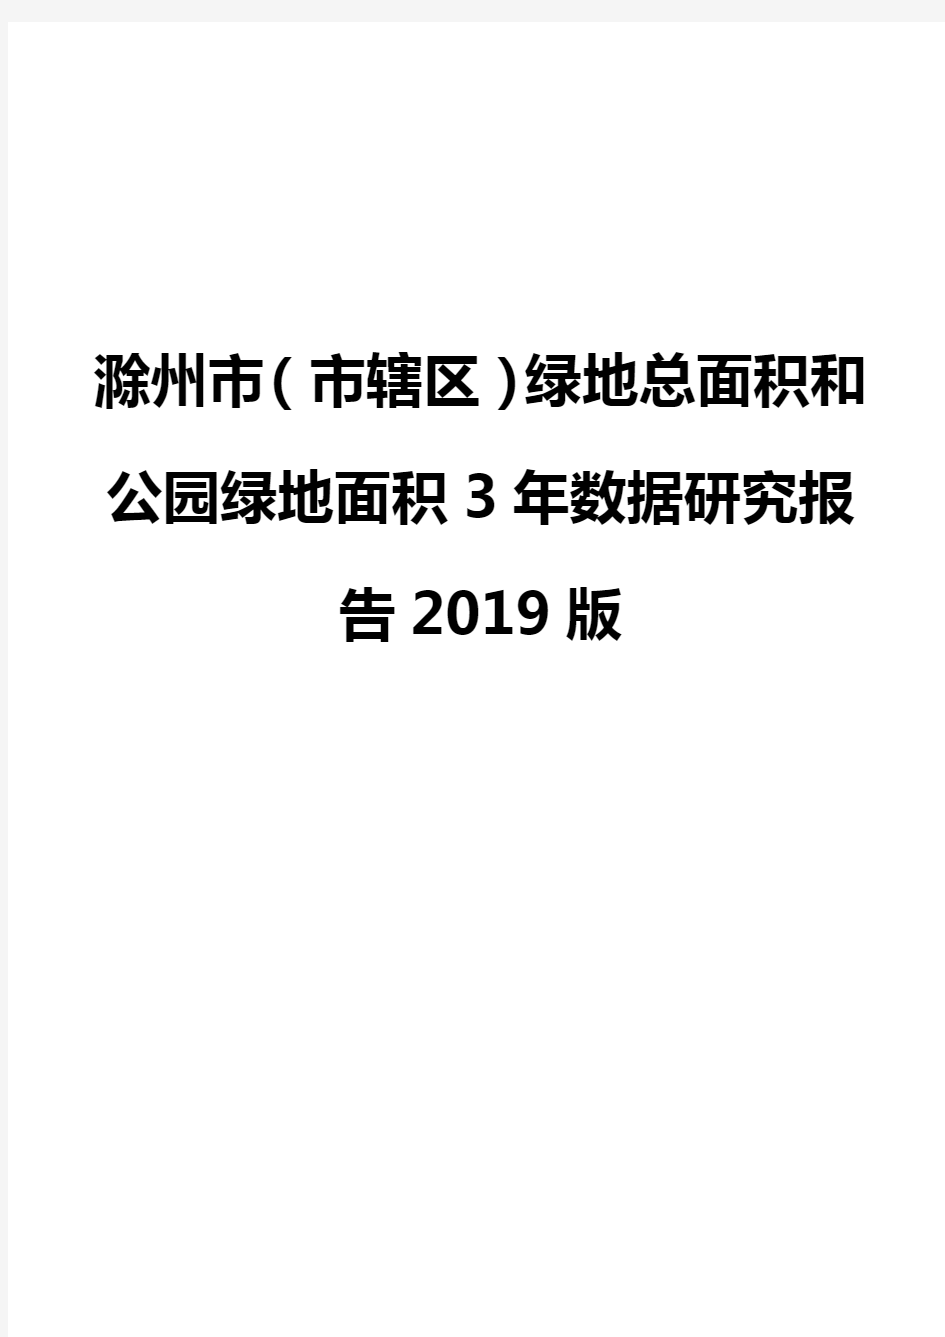 滁州市(市辖区)绿地总面积和公园绿地面积3年数据研究报告2019版